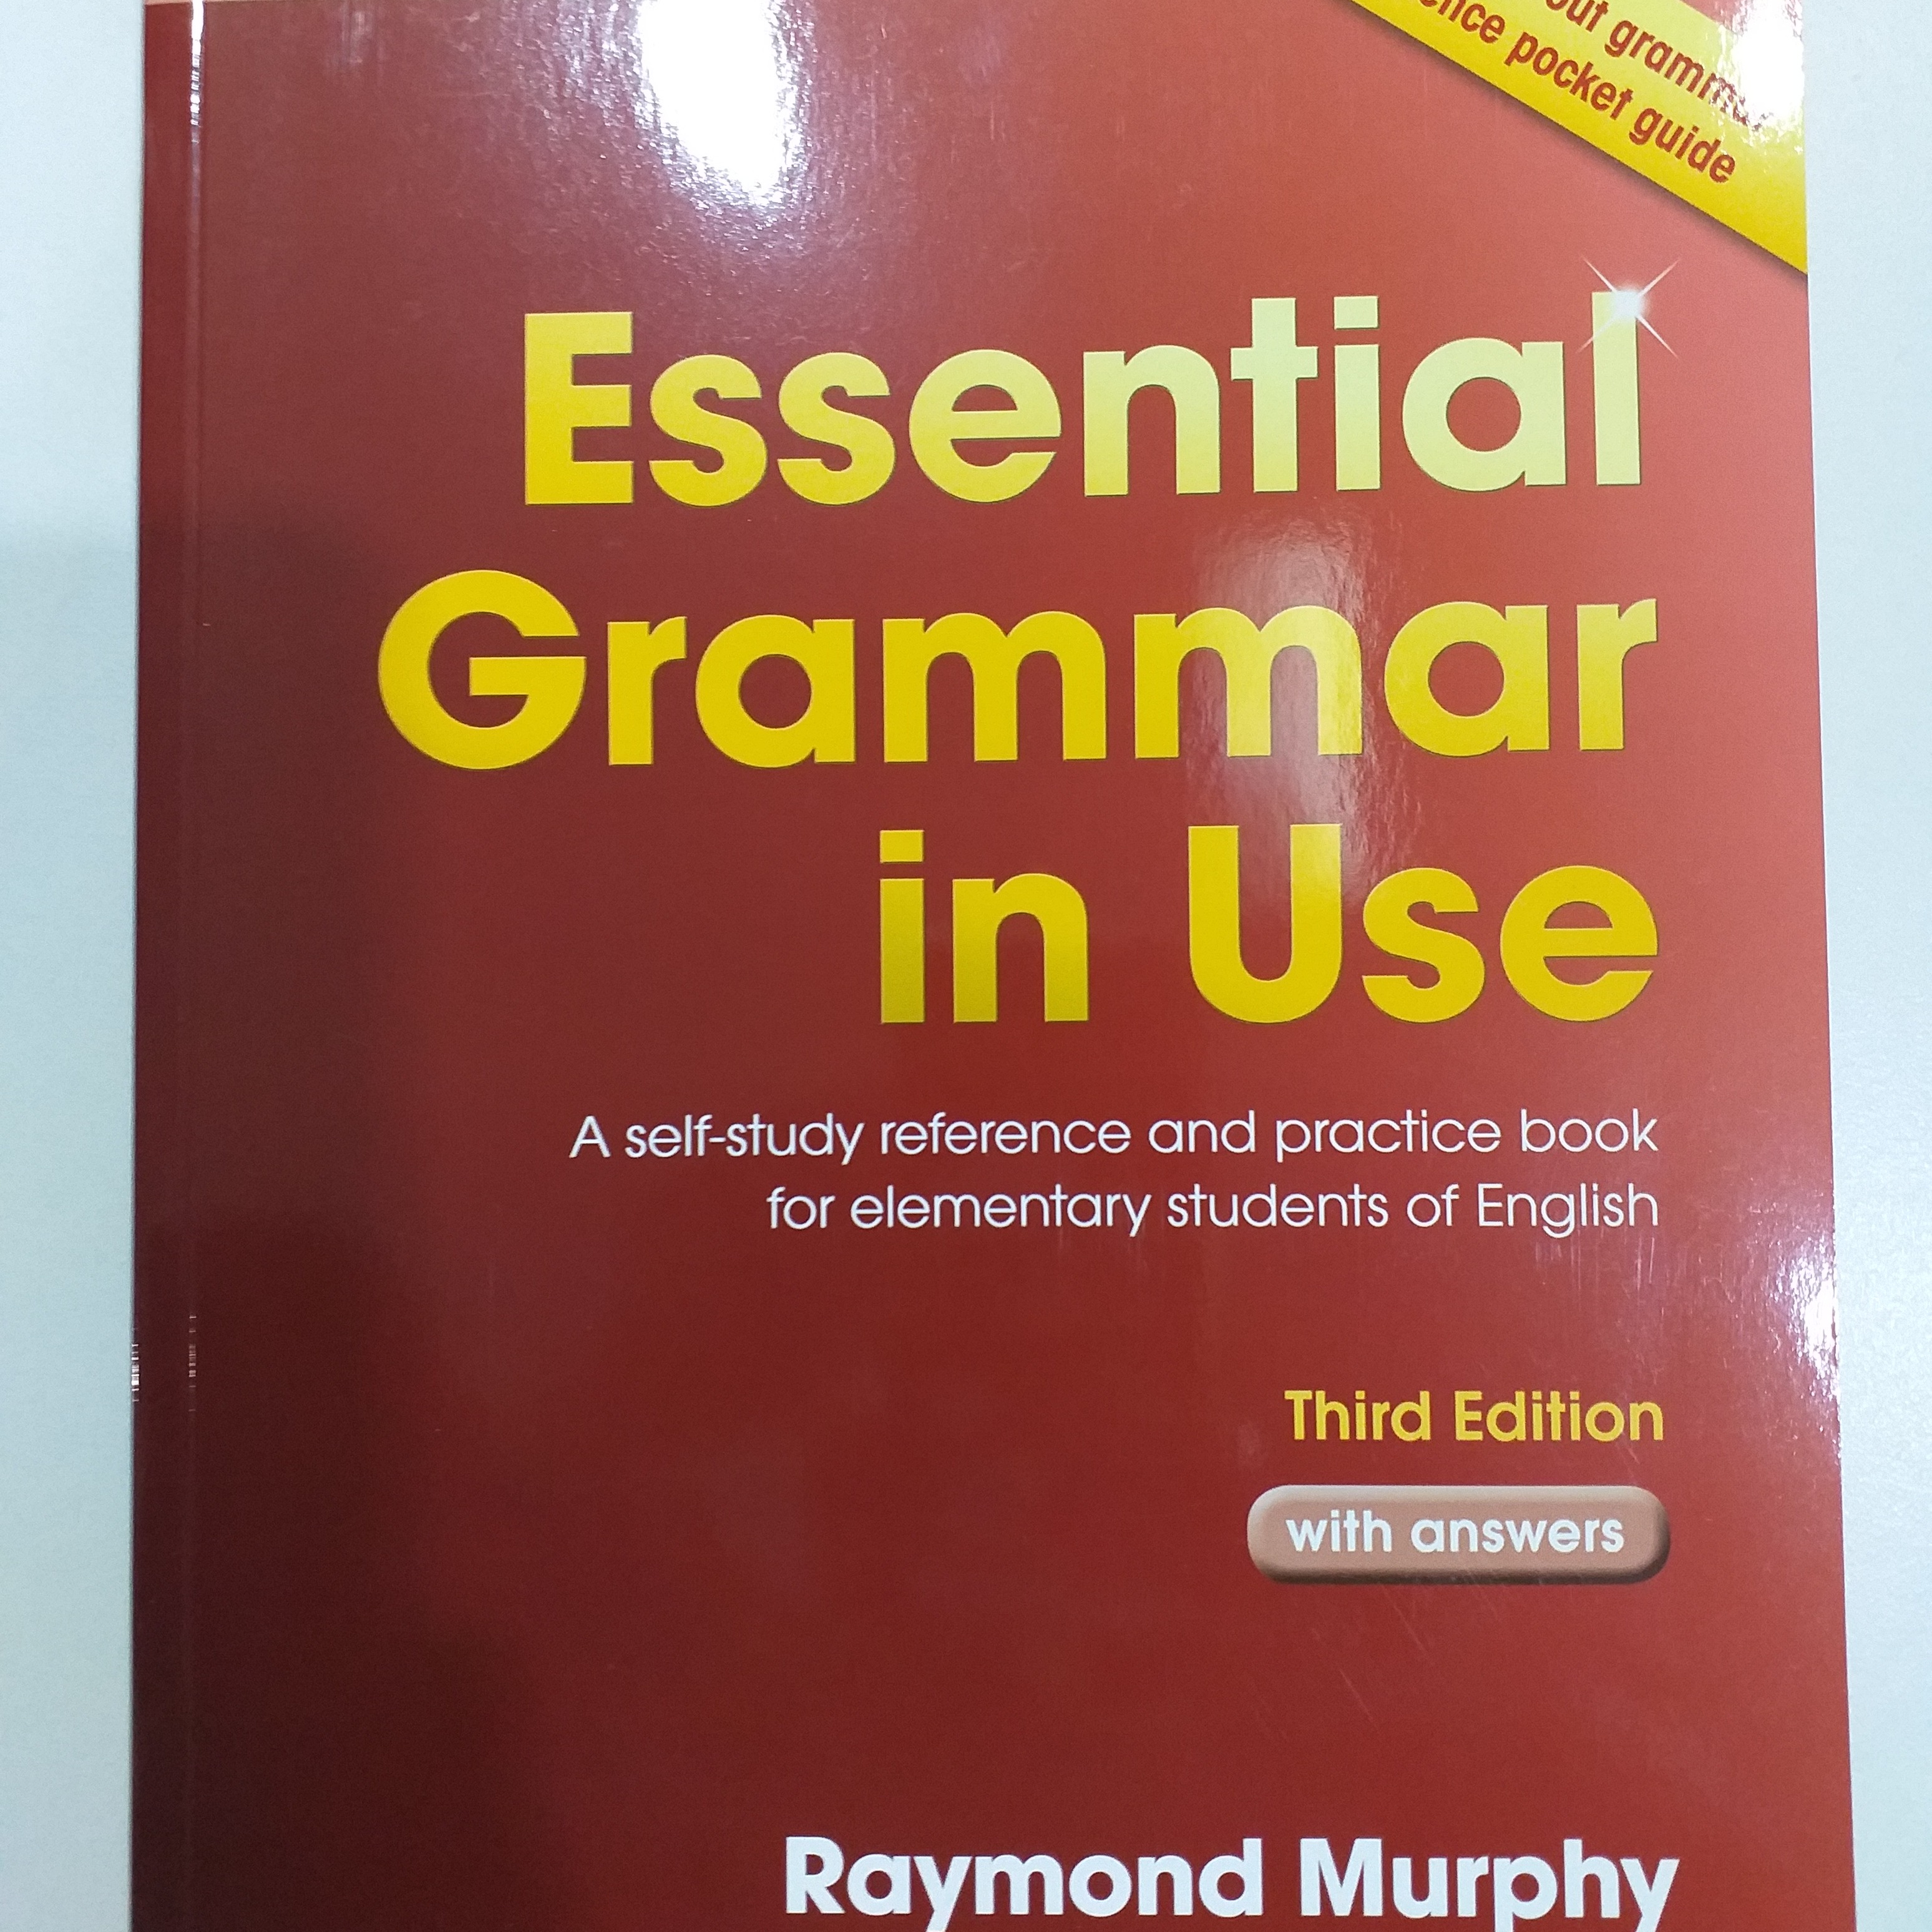 หนังสือ Essential Grammar in Use 3Edition with Answers: มีA Self-Study Reference Pocket Guideท้ายเล่ม หนังสือแกรมม่าของแท้ (ไม่ใช่ซีร๊อก)